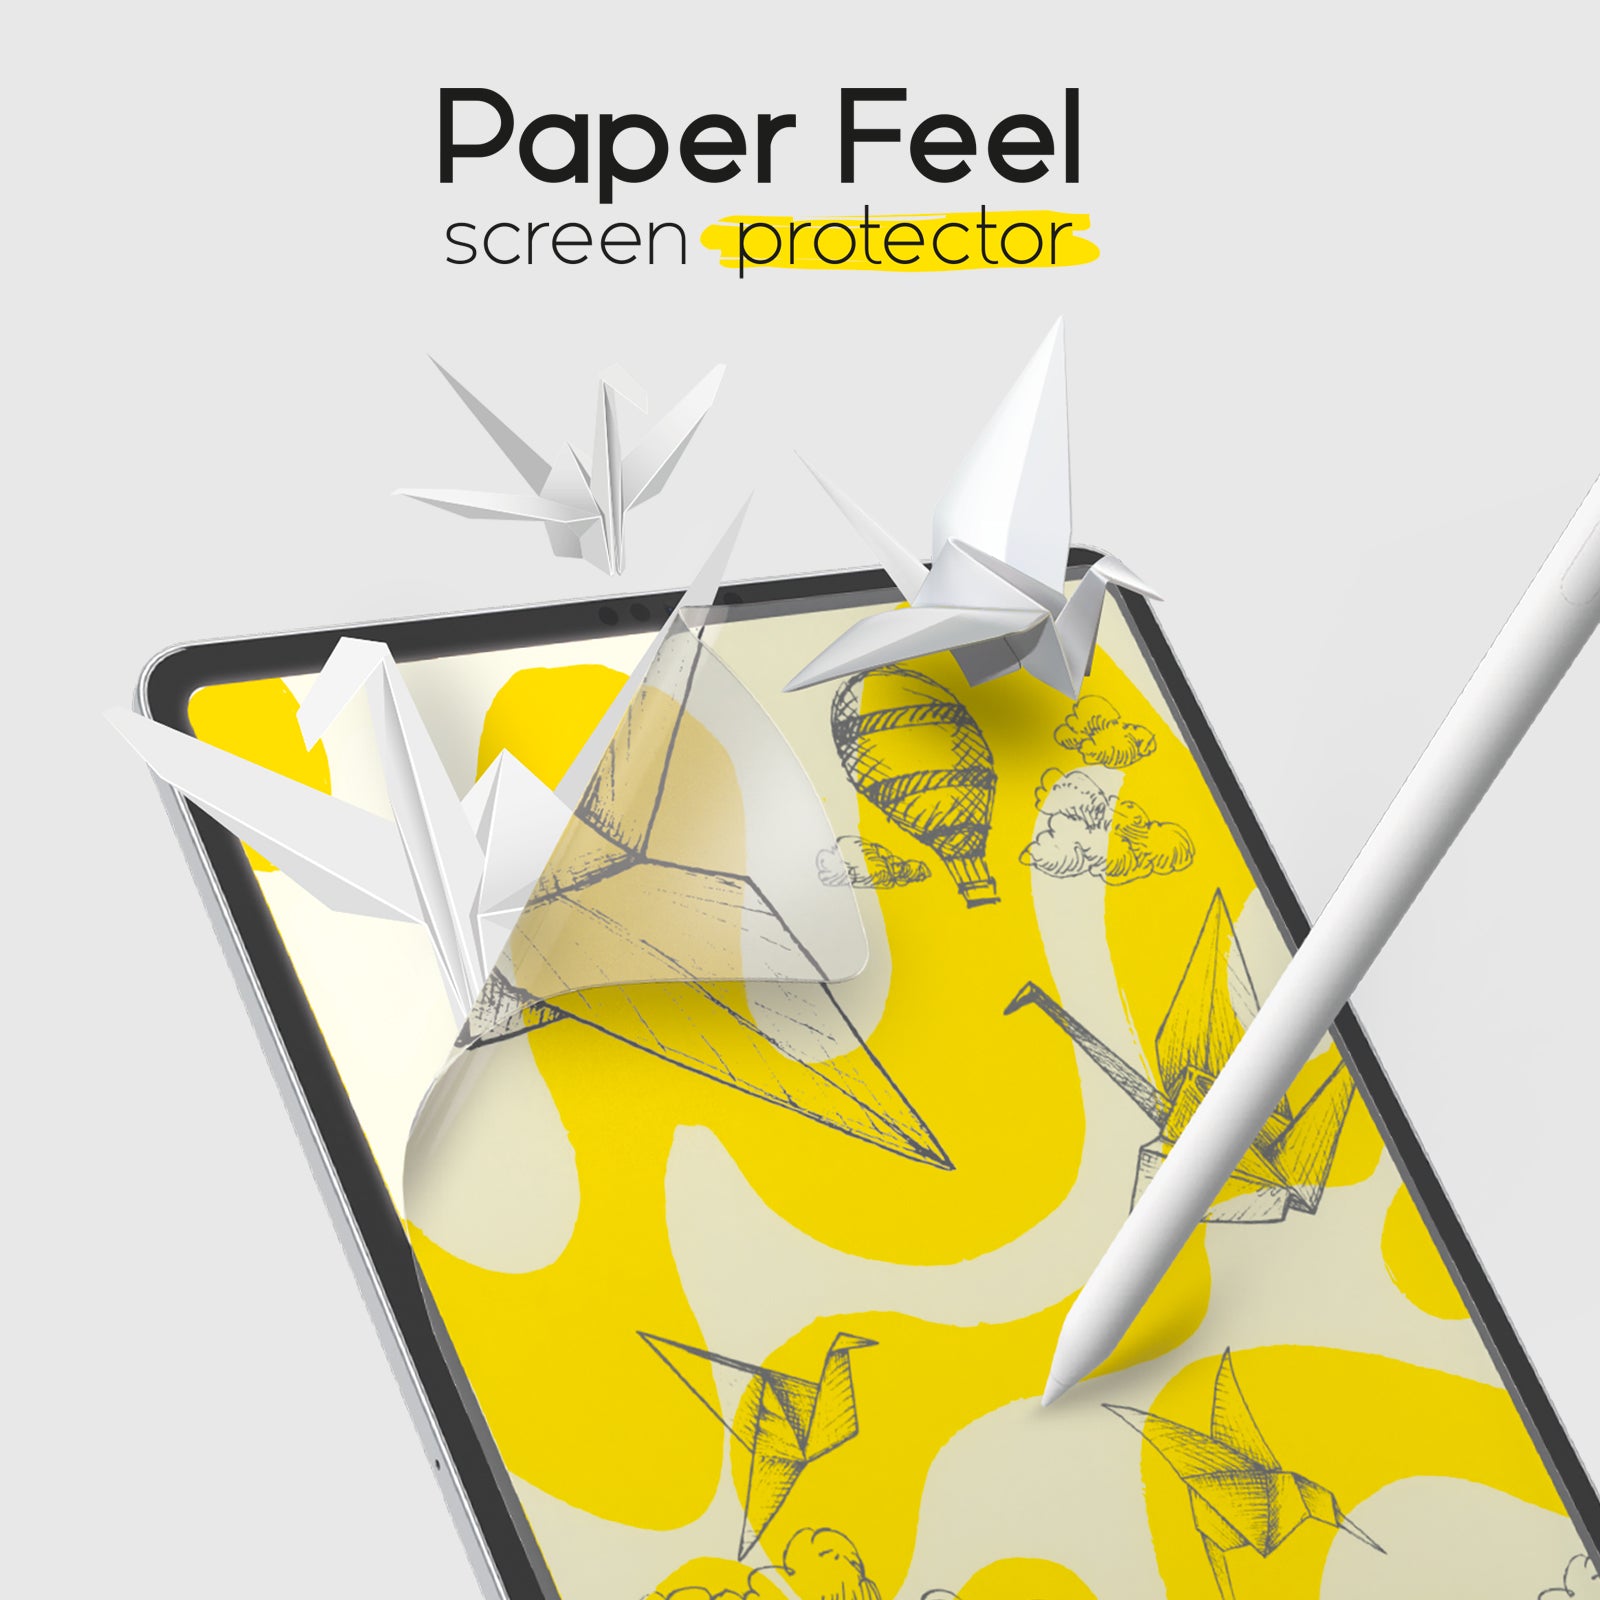 Pour iPad 10.2 2019 WIWU iPaper Protect Film de protection d'écran en papier